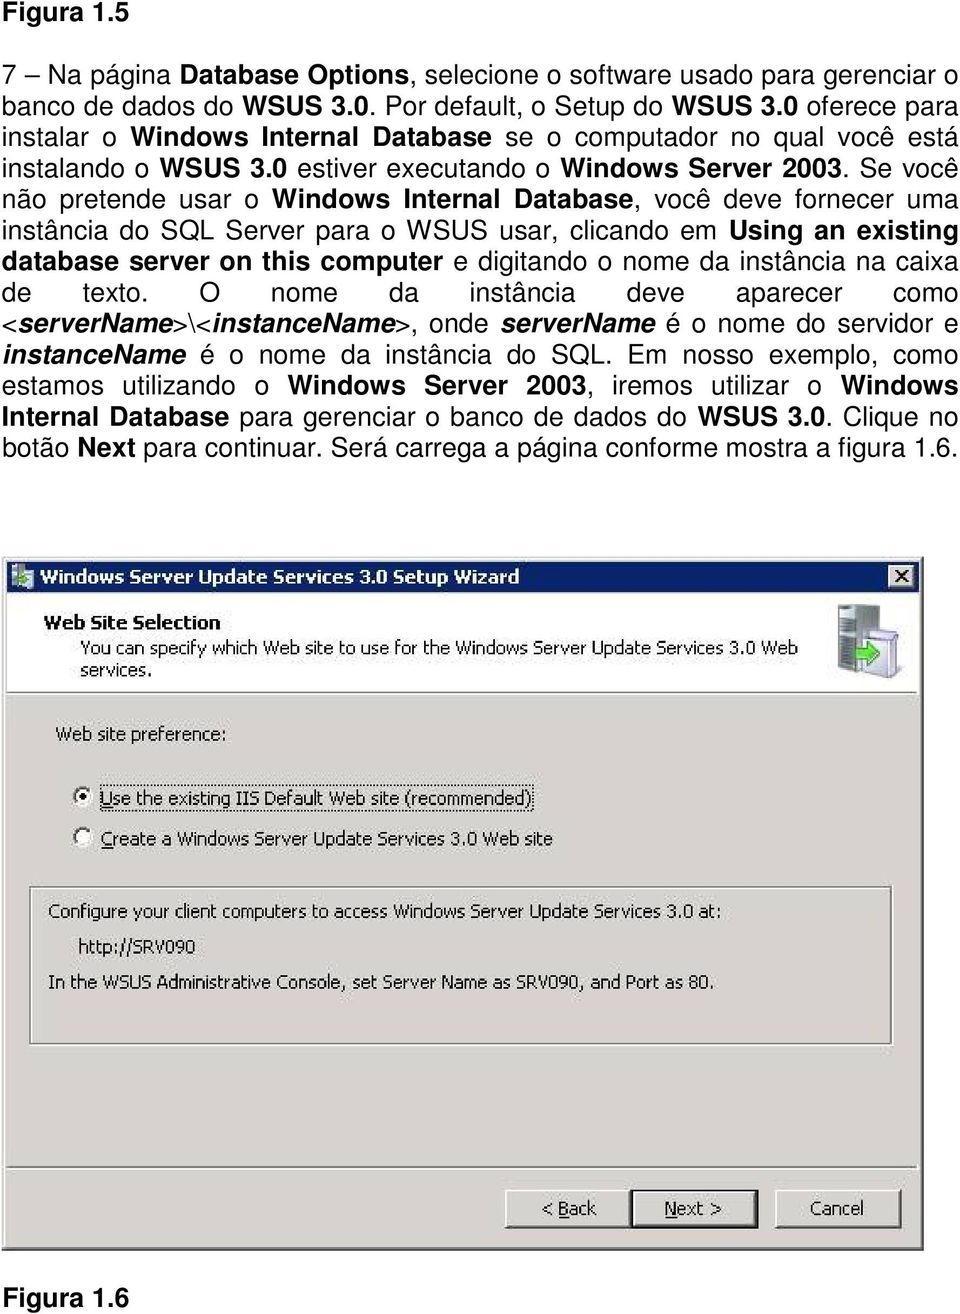 Se você não pretende usar o Windows Internal Database, você deve fornecer uma instância do SQL Server para o WSUS usar, clicando em Using an existing database server on this computer e digitando o